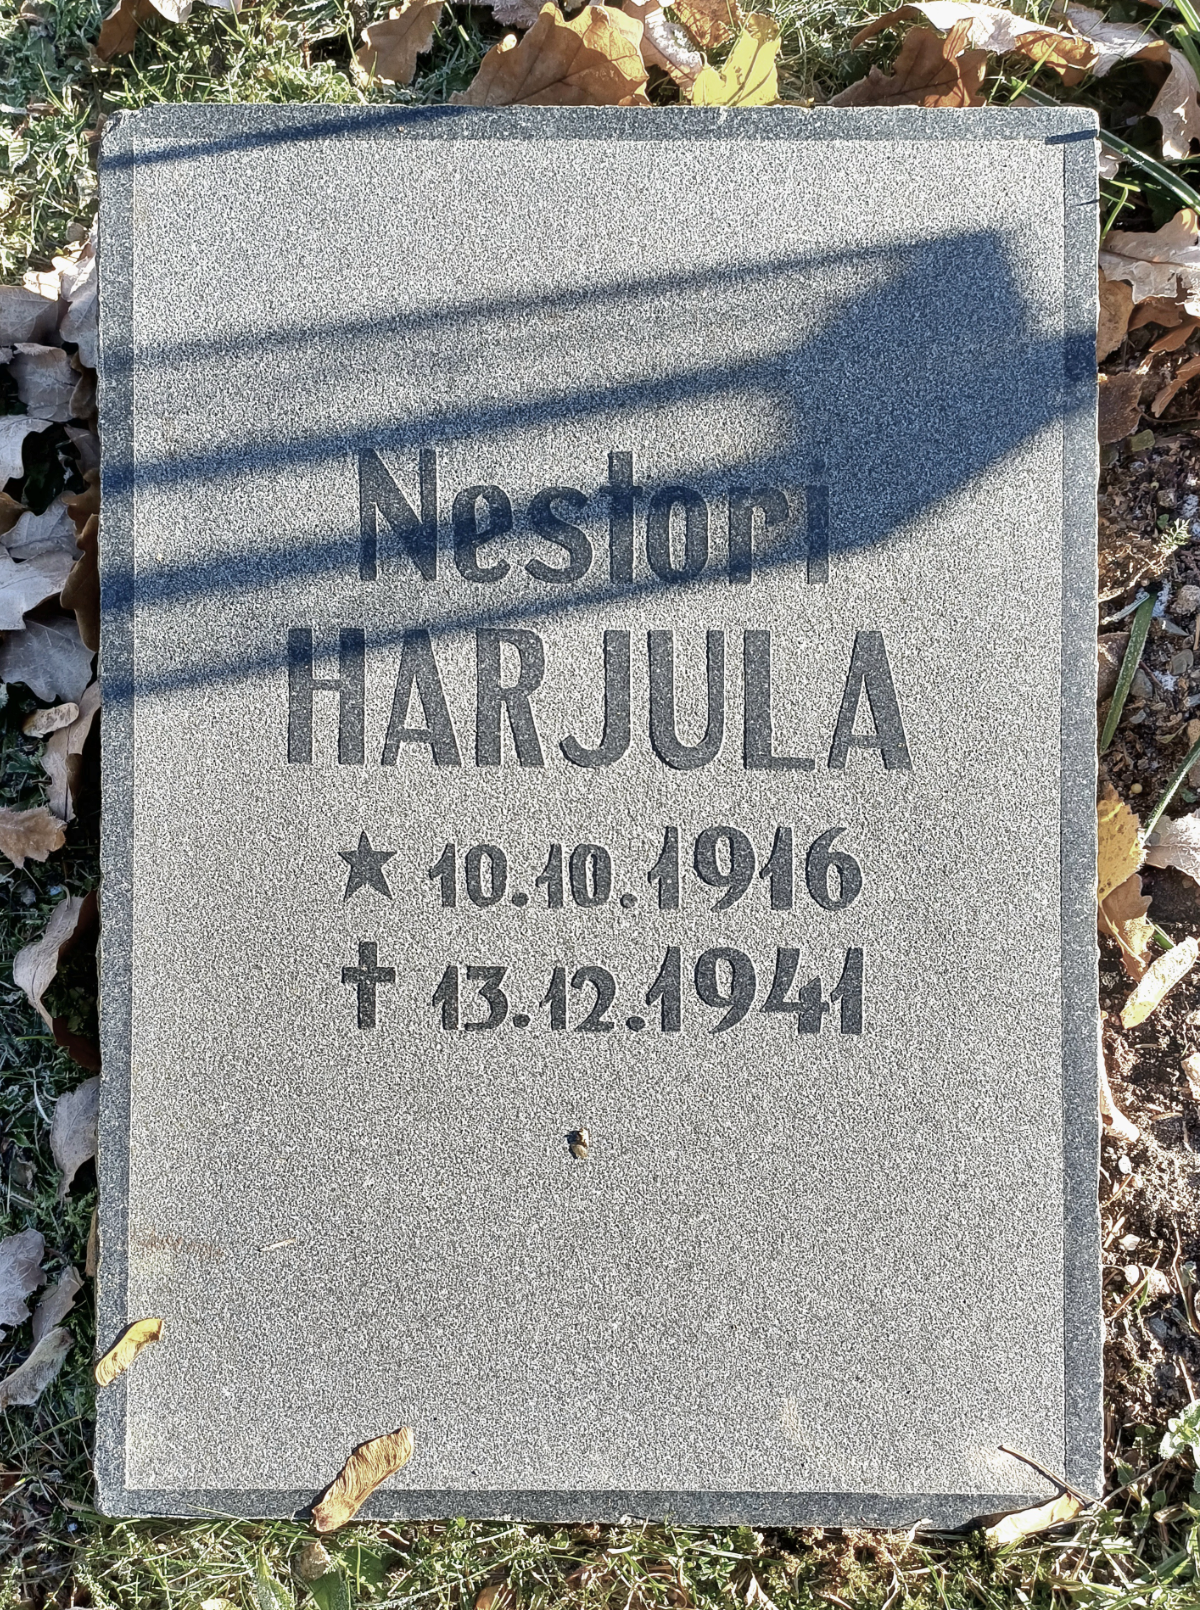 Käppäselässä kaatunut sotamies Nestori Harjula on haudattu Ylöjärven sankarihautausmaalle (Jouni Koskela)